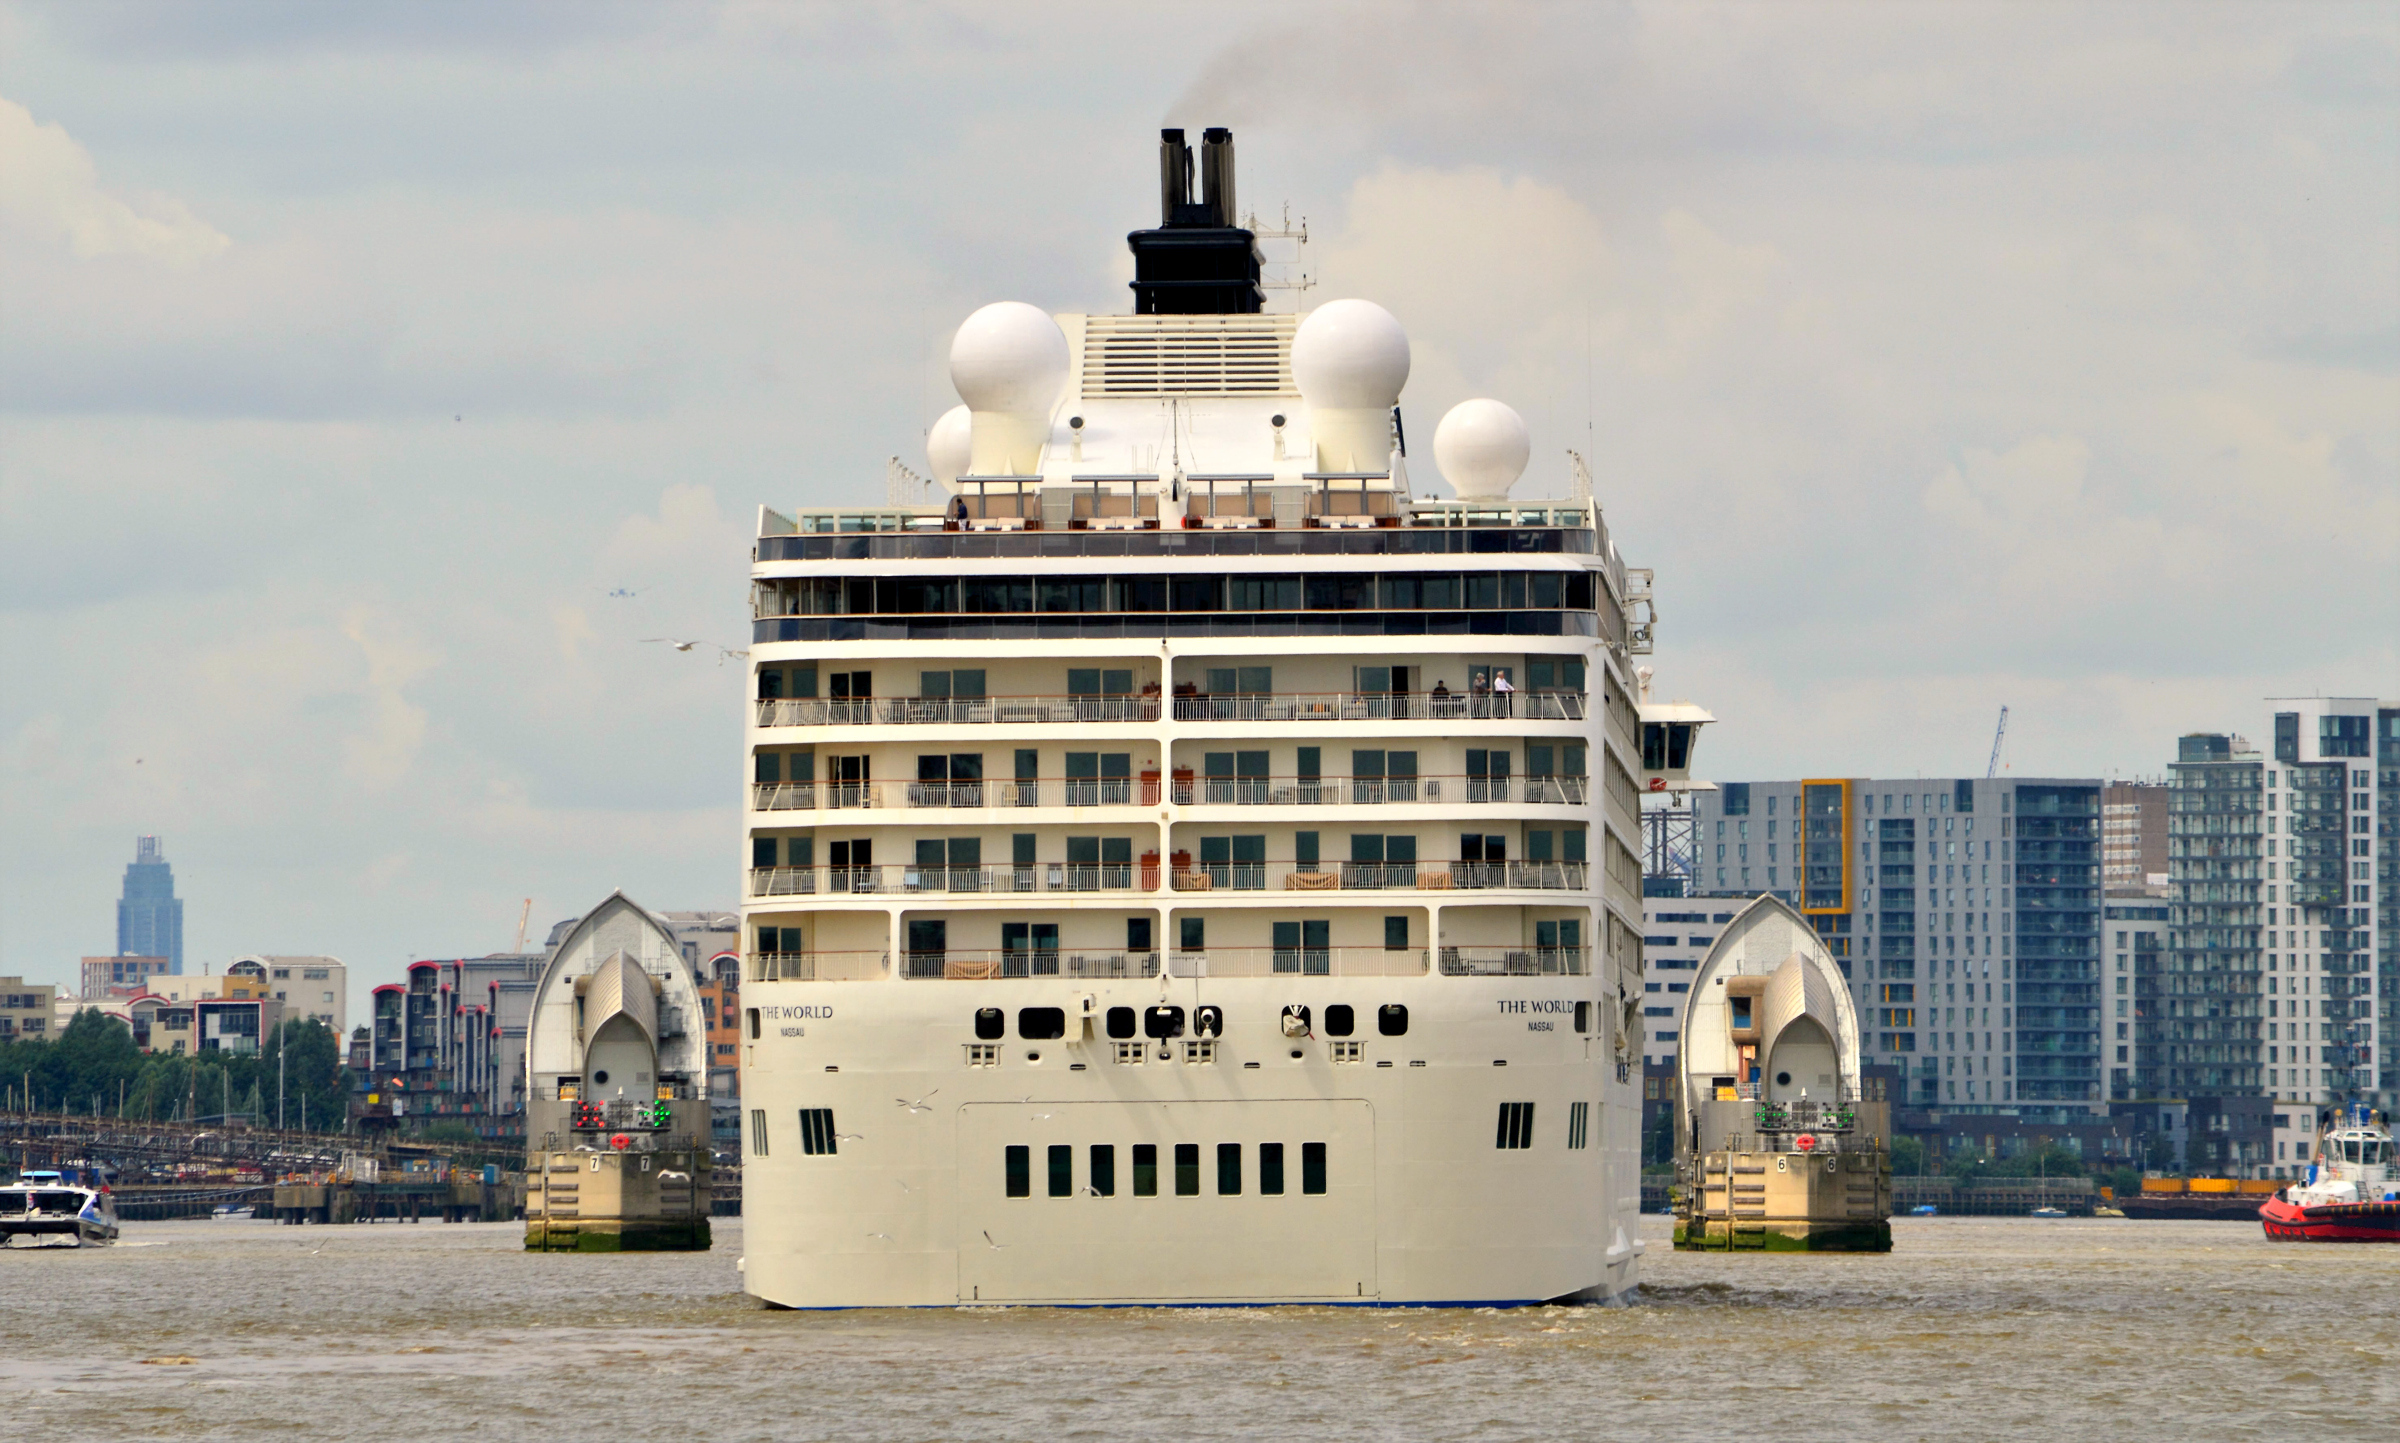 The World Cruise ship at the Royal Docks